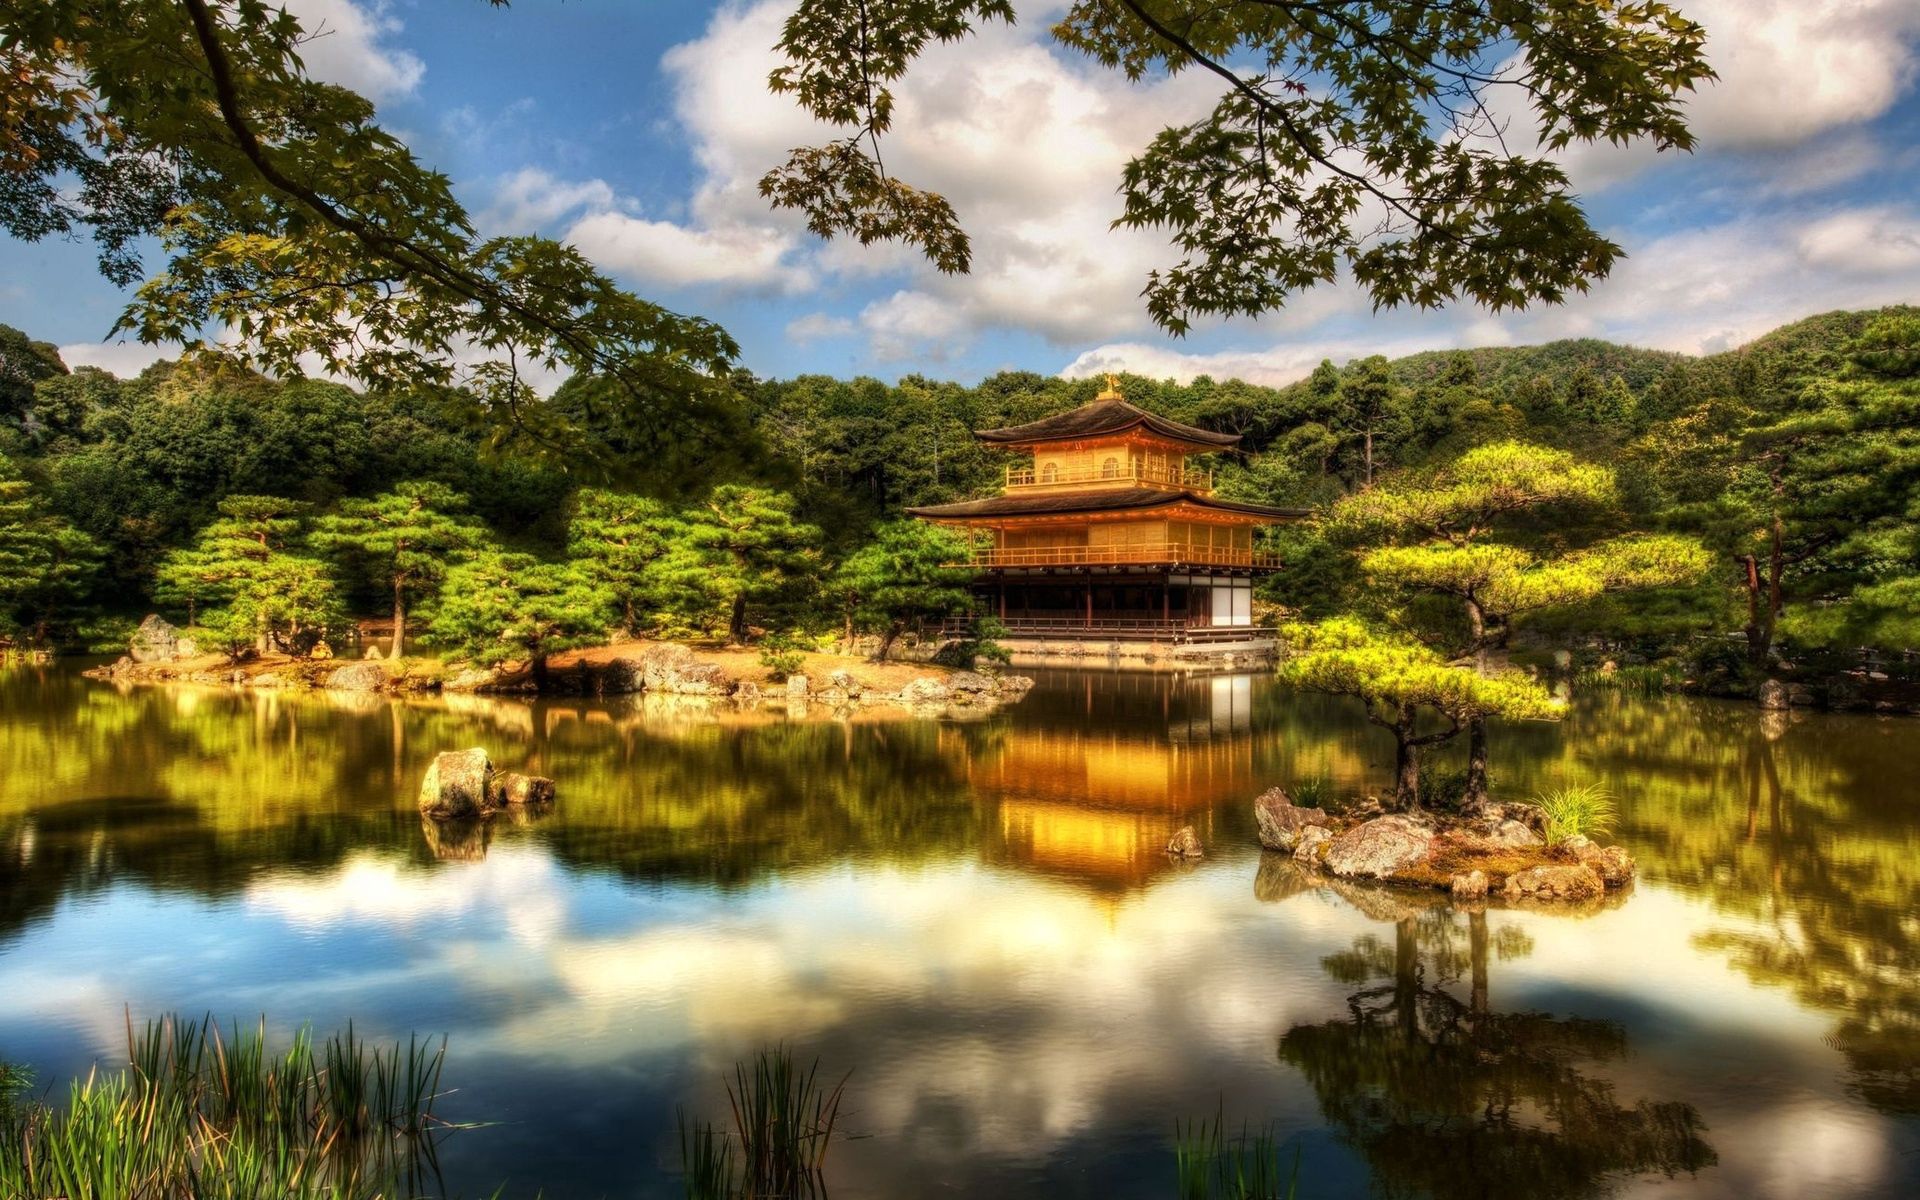 Free download wallpaper Cities, Reanji, Zen Garden, Garden Of Zen, Mirabel, Mirabell, Austria, Japan on your PC desktop